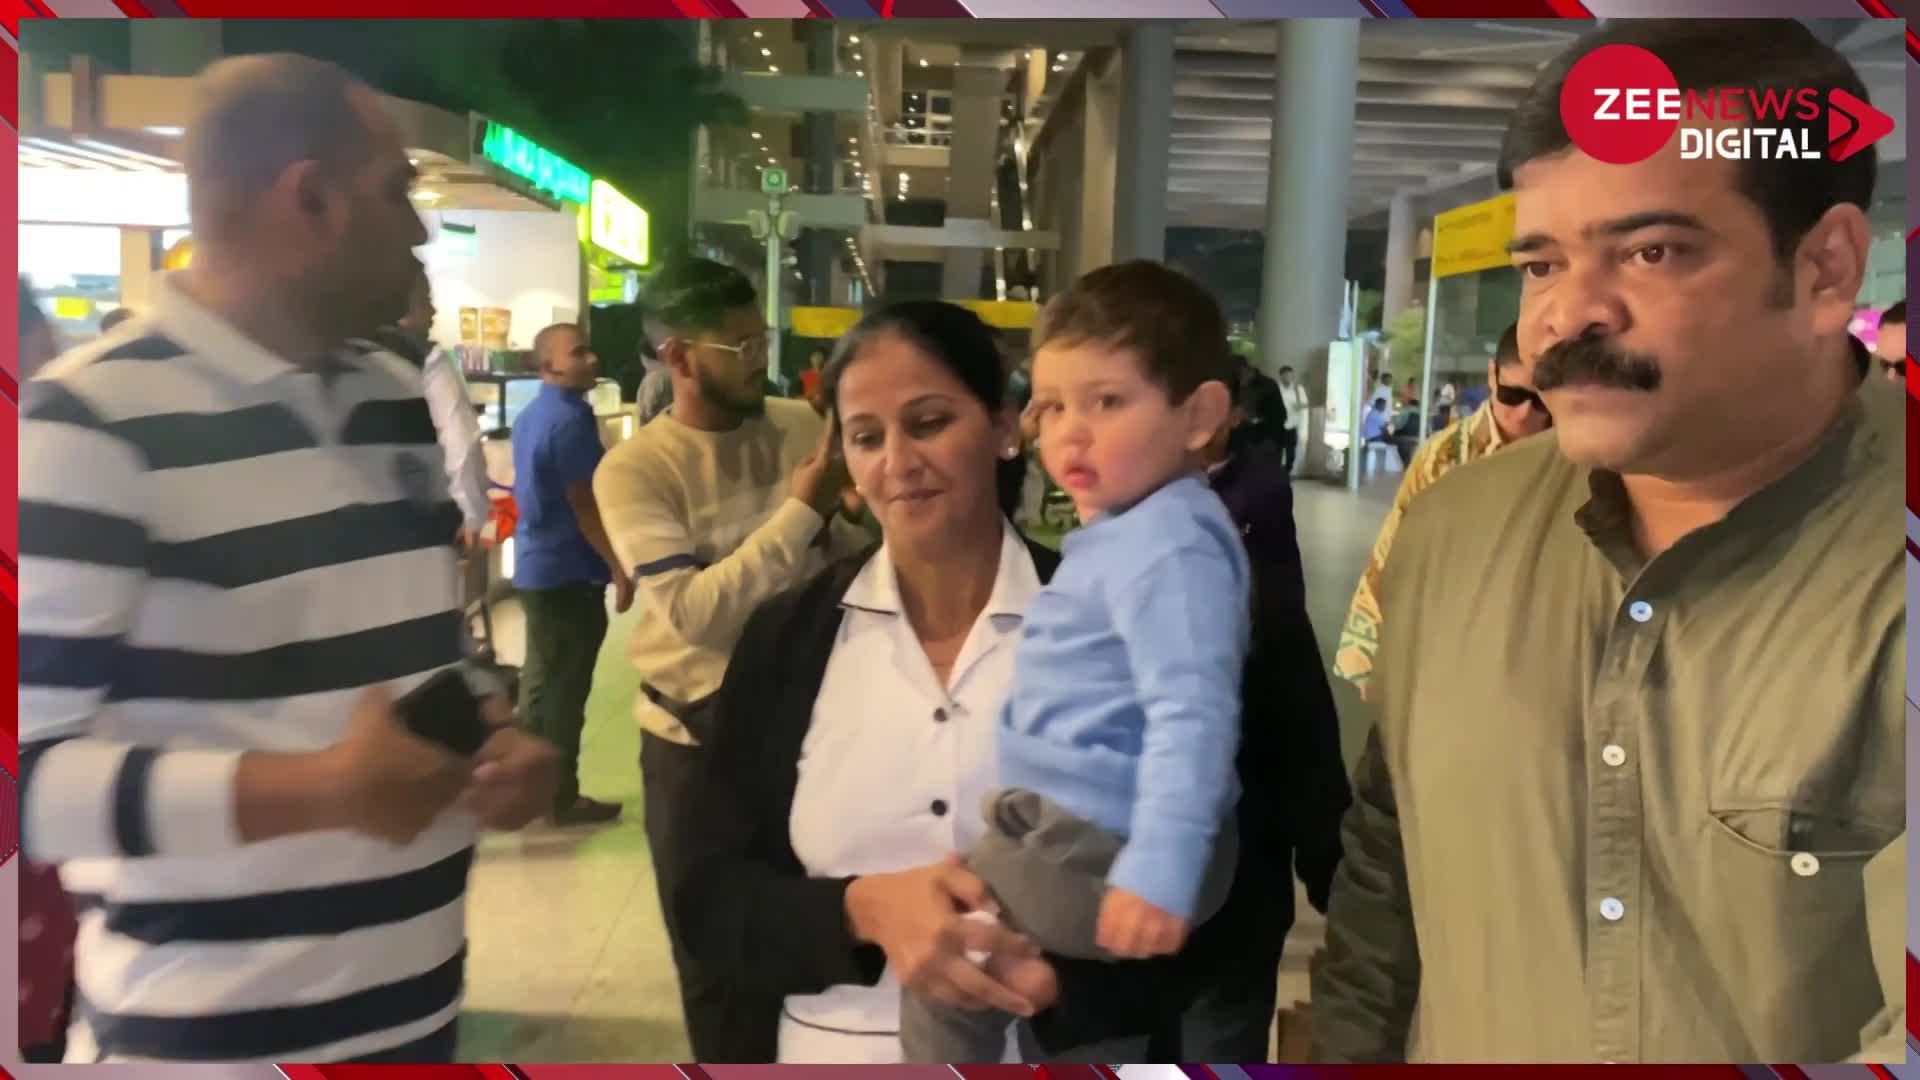 करीना, जेह, तैमूर के साथ सैफ अली खान पहुंचे एयरपोर्ट, स्वैग में दिखा पूरा परिवार, देखें वीडियो